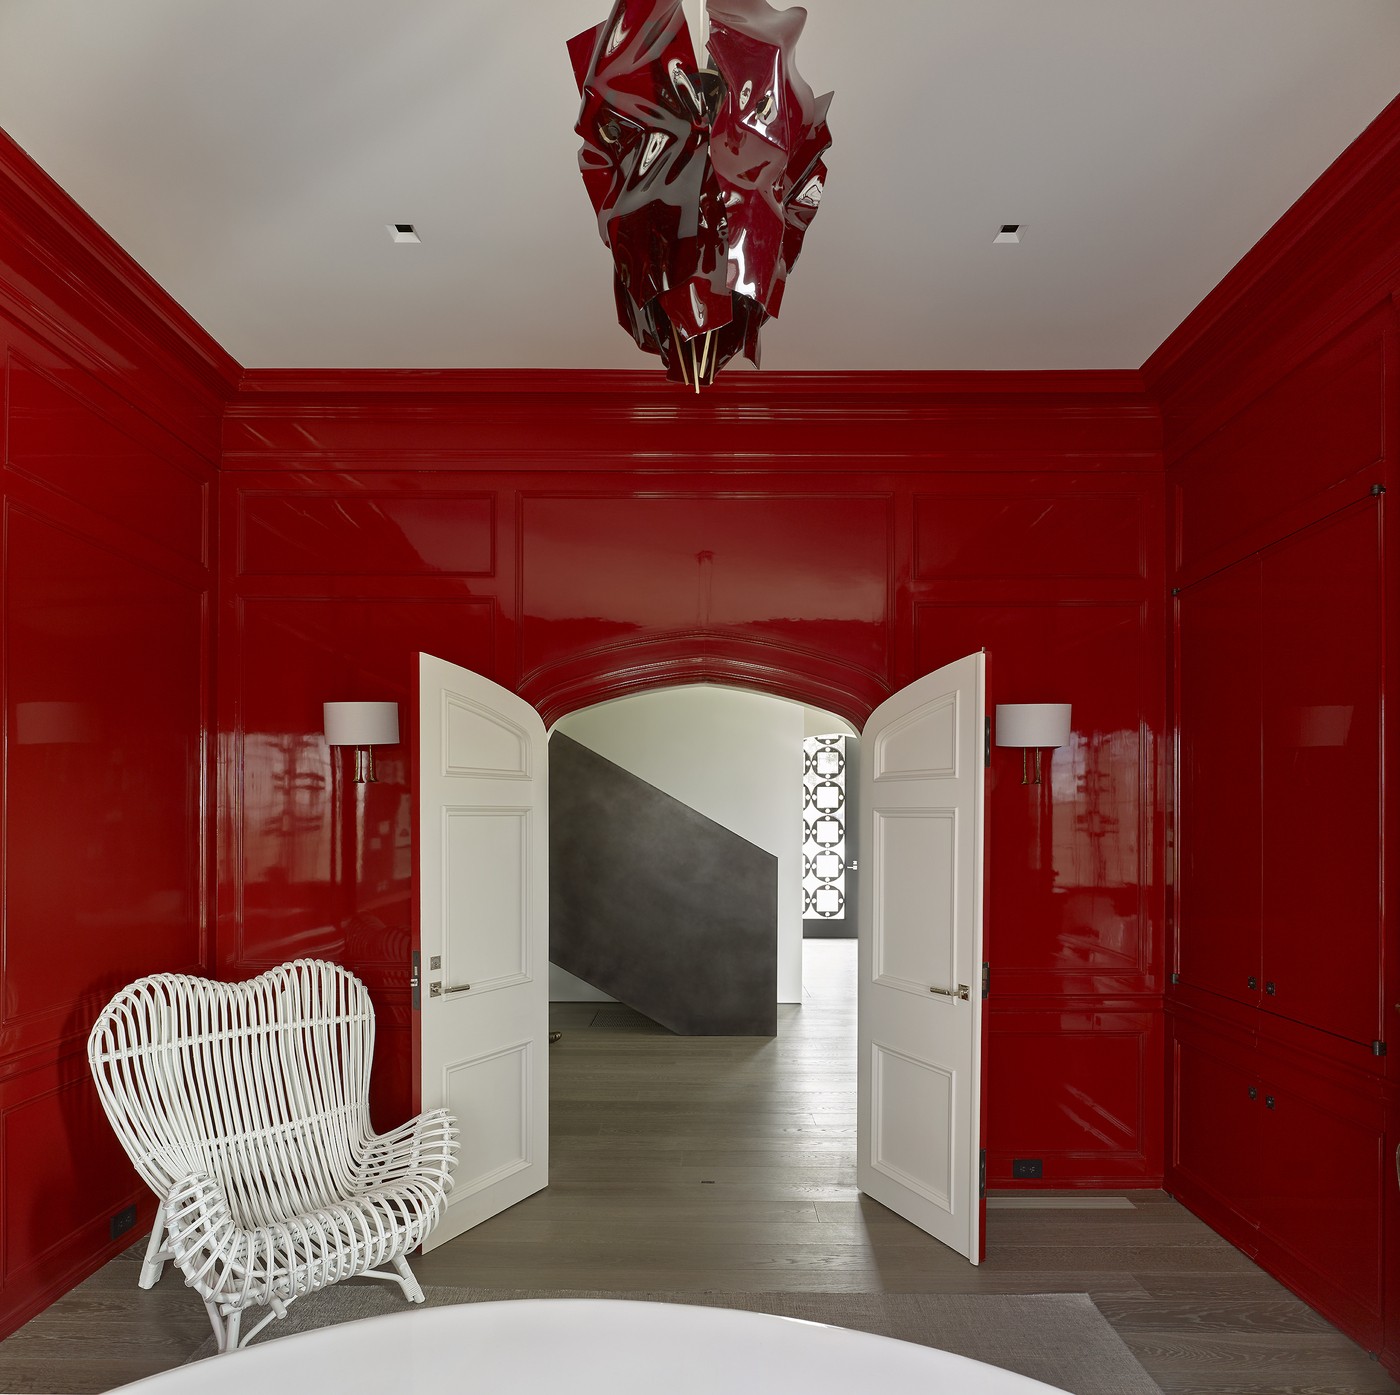 Décor do dia: paredes vermelhas roubam a cena neste escritório, nos Estados Unidos (Foto: Peter Murdock Photography)